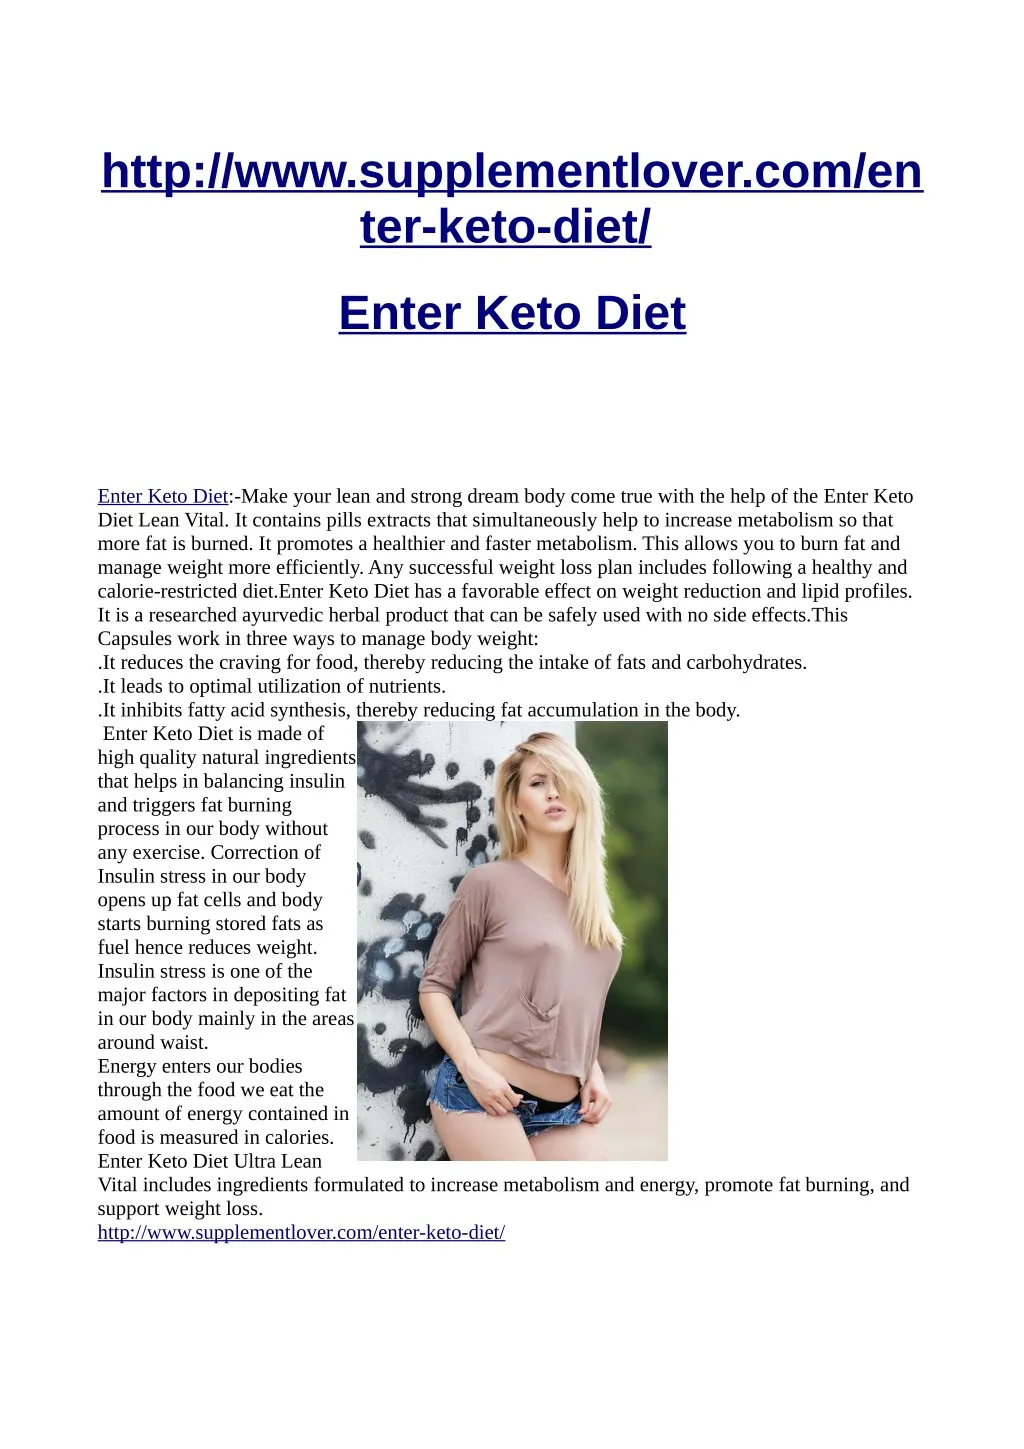 http www supplementlover com en ter keto diet